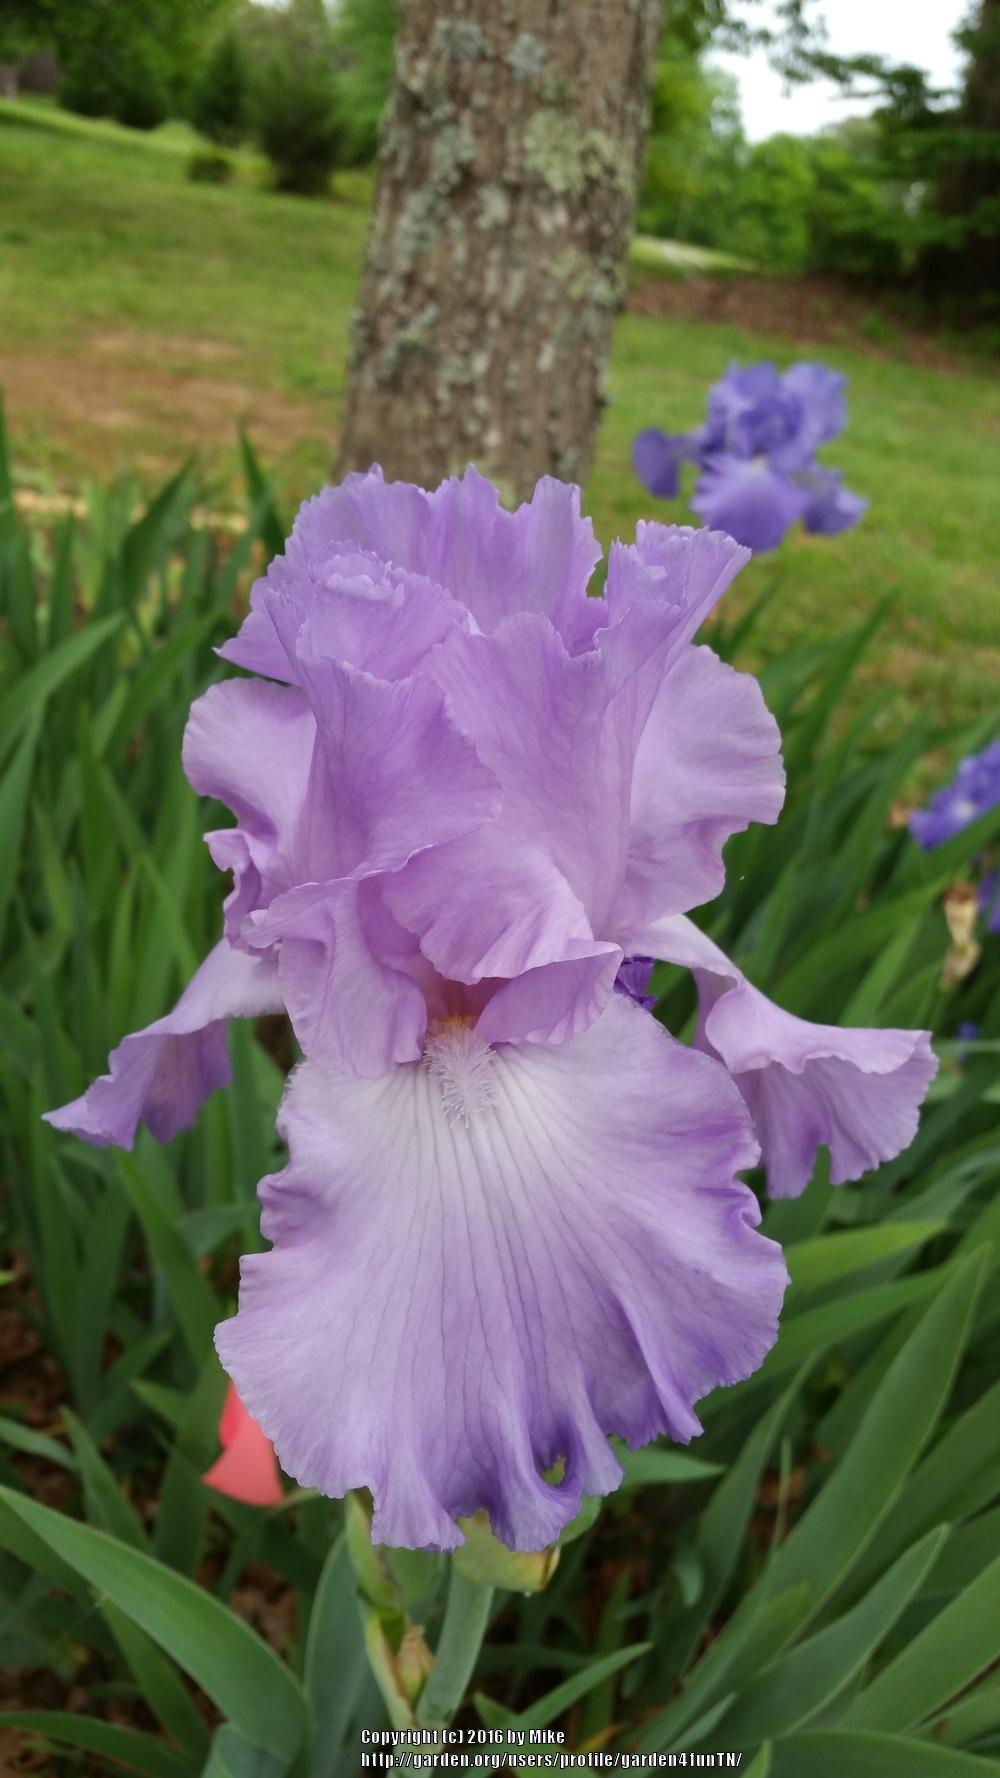 Photo of Tall Bearded Iris (Iris 'Mary Frances') uploaded by garden4funTN